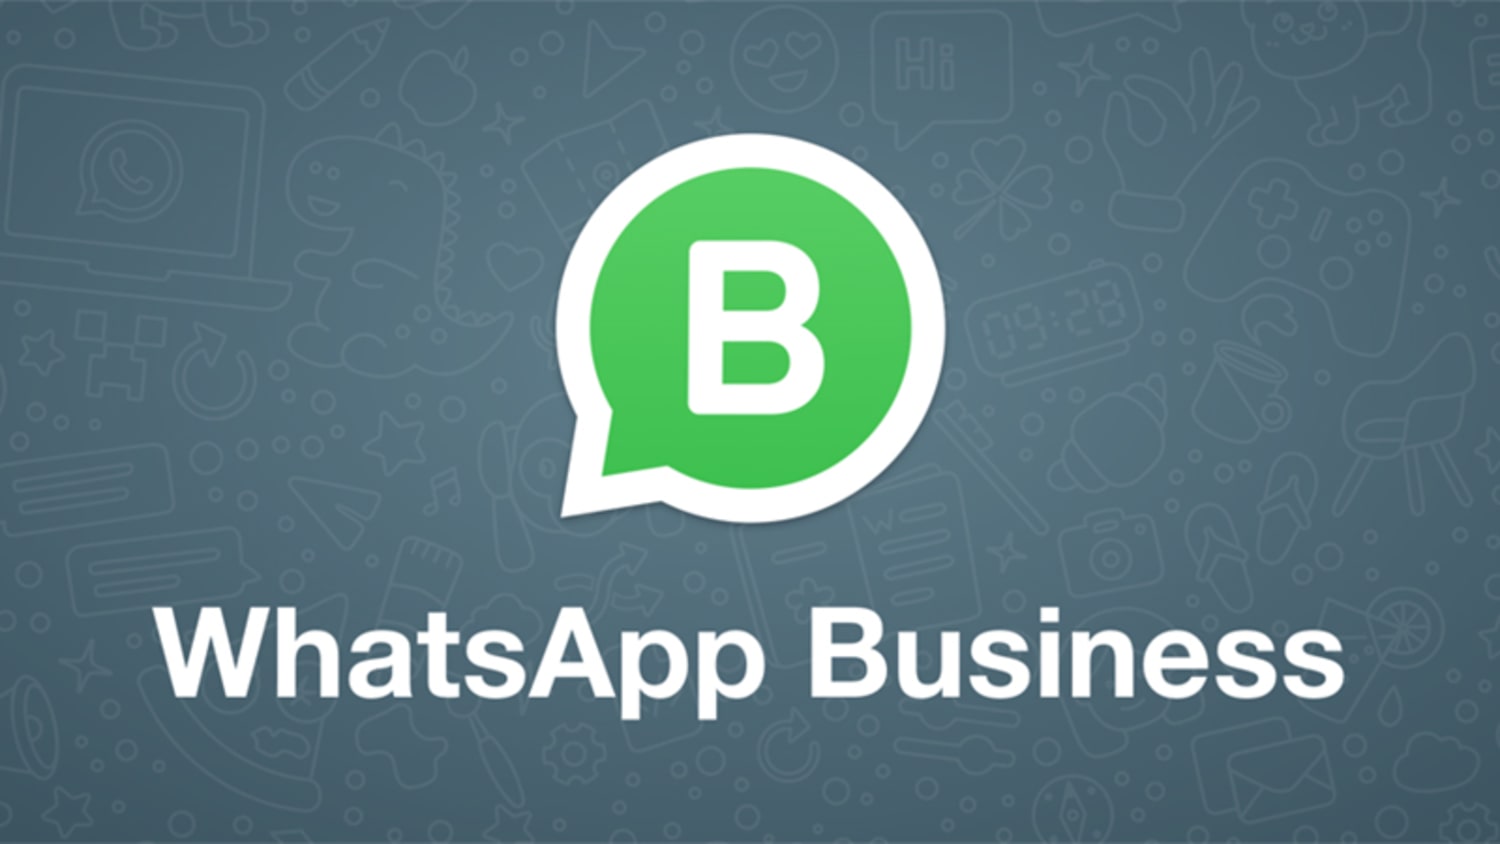 Como enviar mensagem em massa no WhatsApp business 1